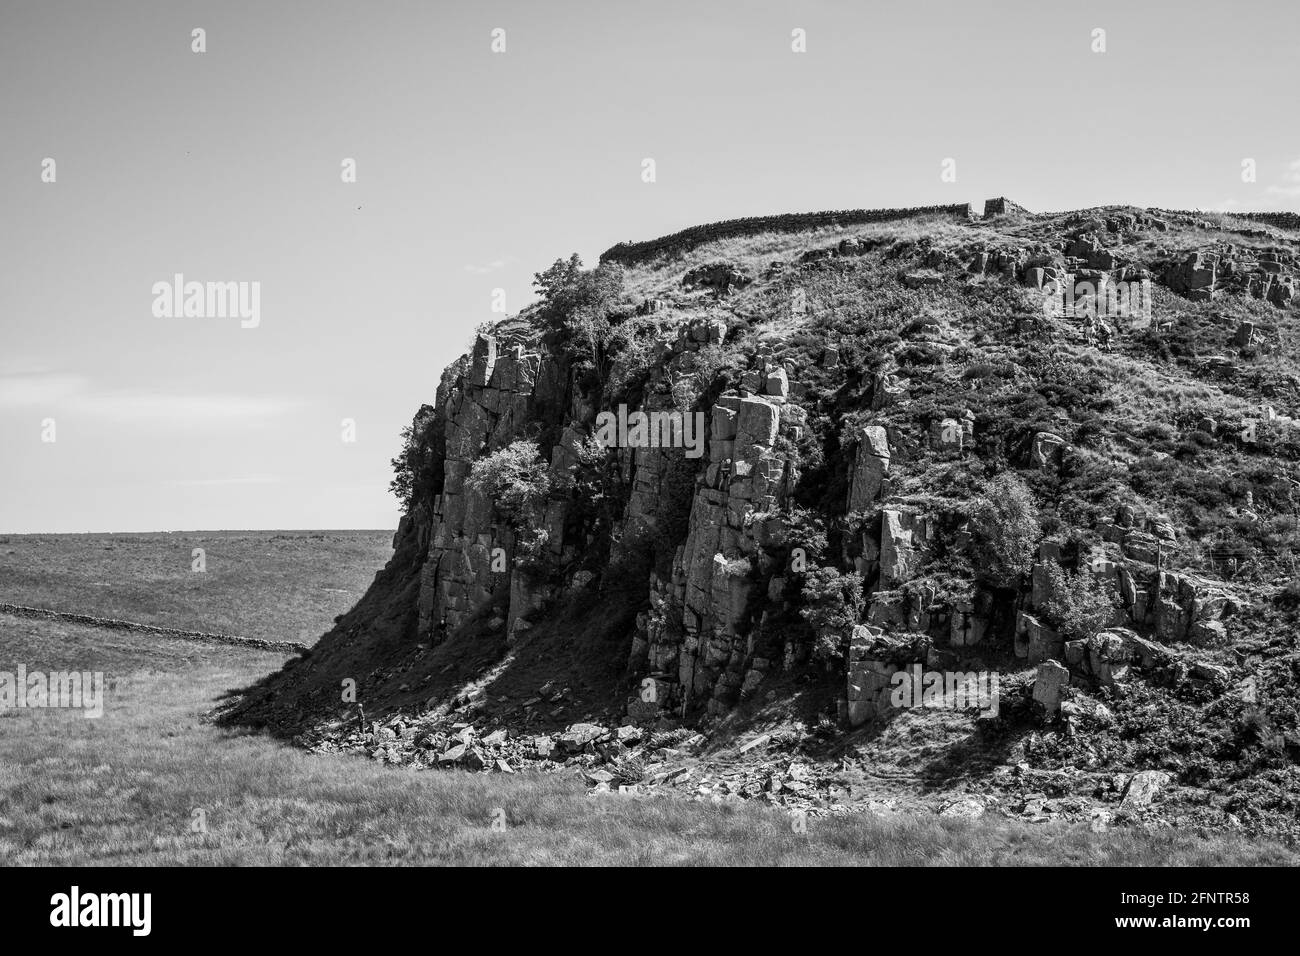 Northumberland UK: Mur Hadrien construit sur de hautes falaises (mur romain) lors d'une journée ensoleillée d'été dans la campagne anglaise Banque D'Images